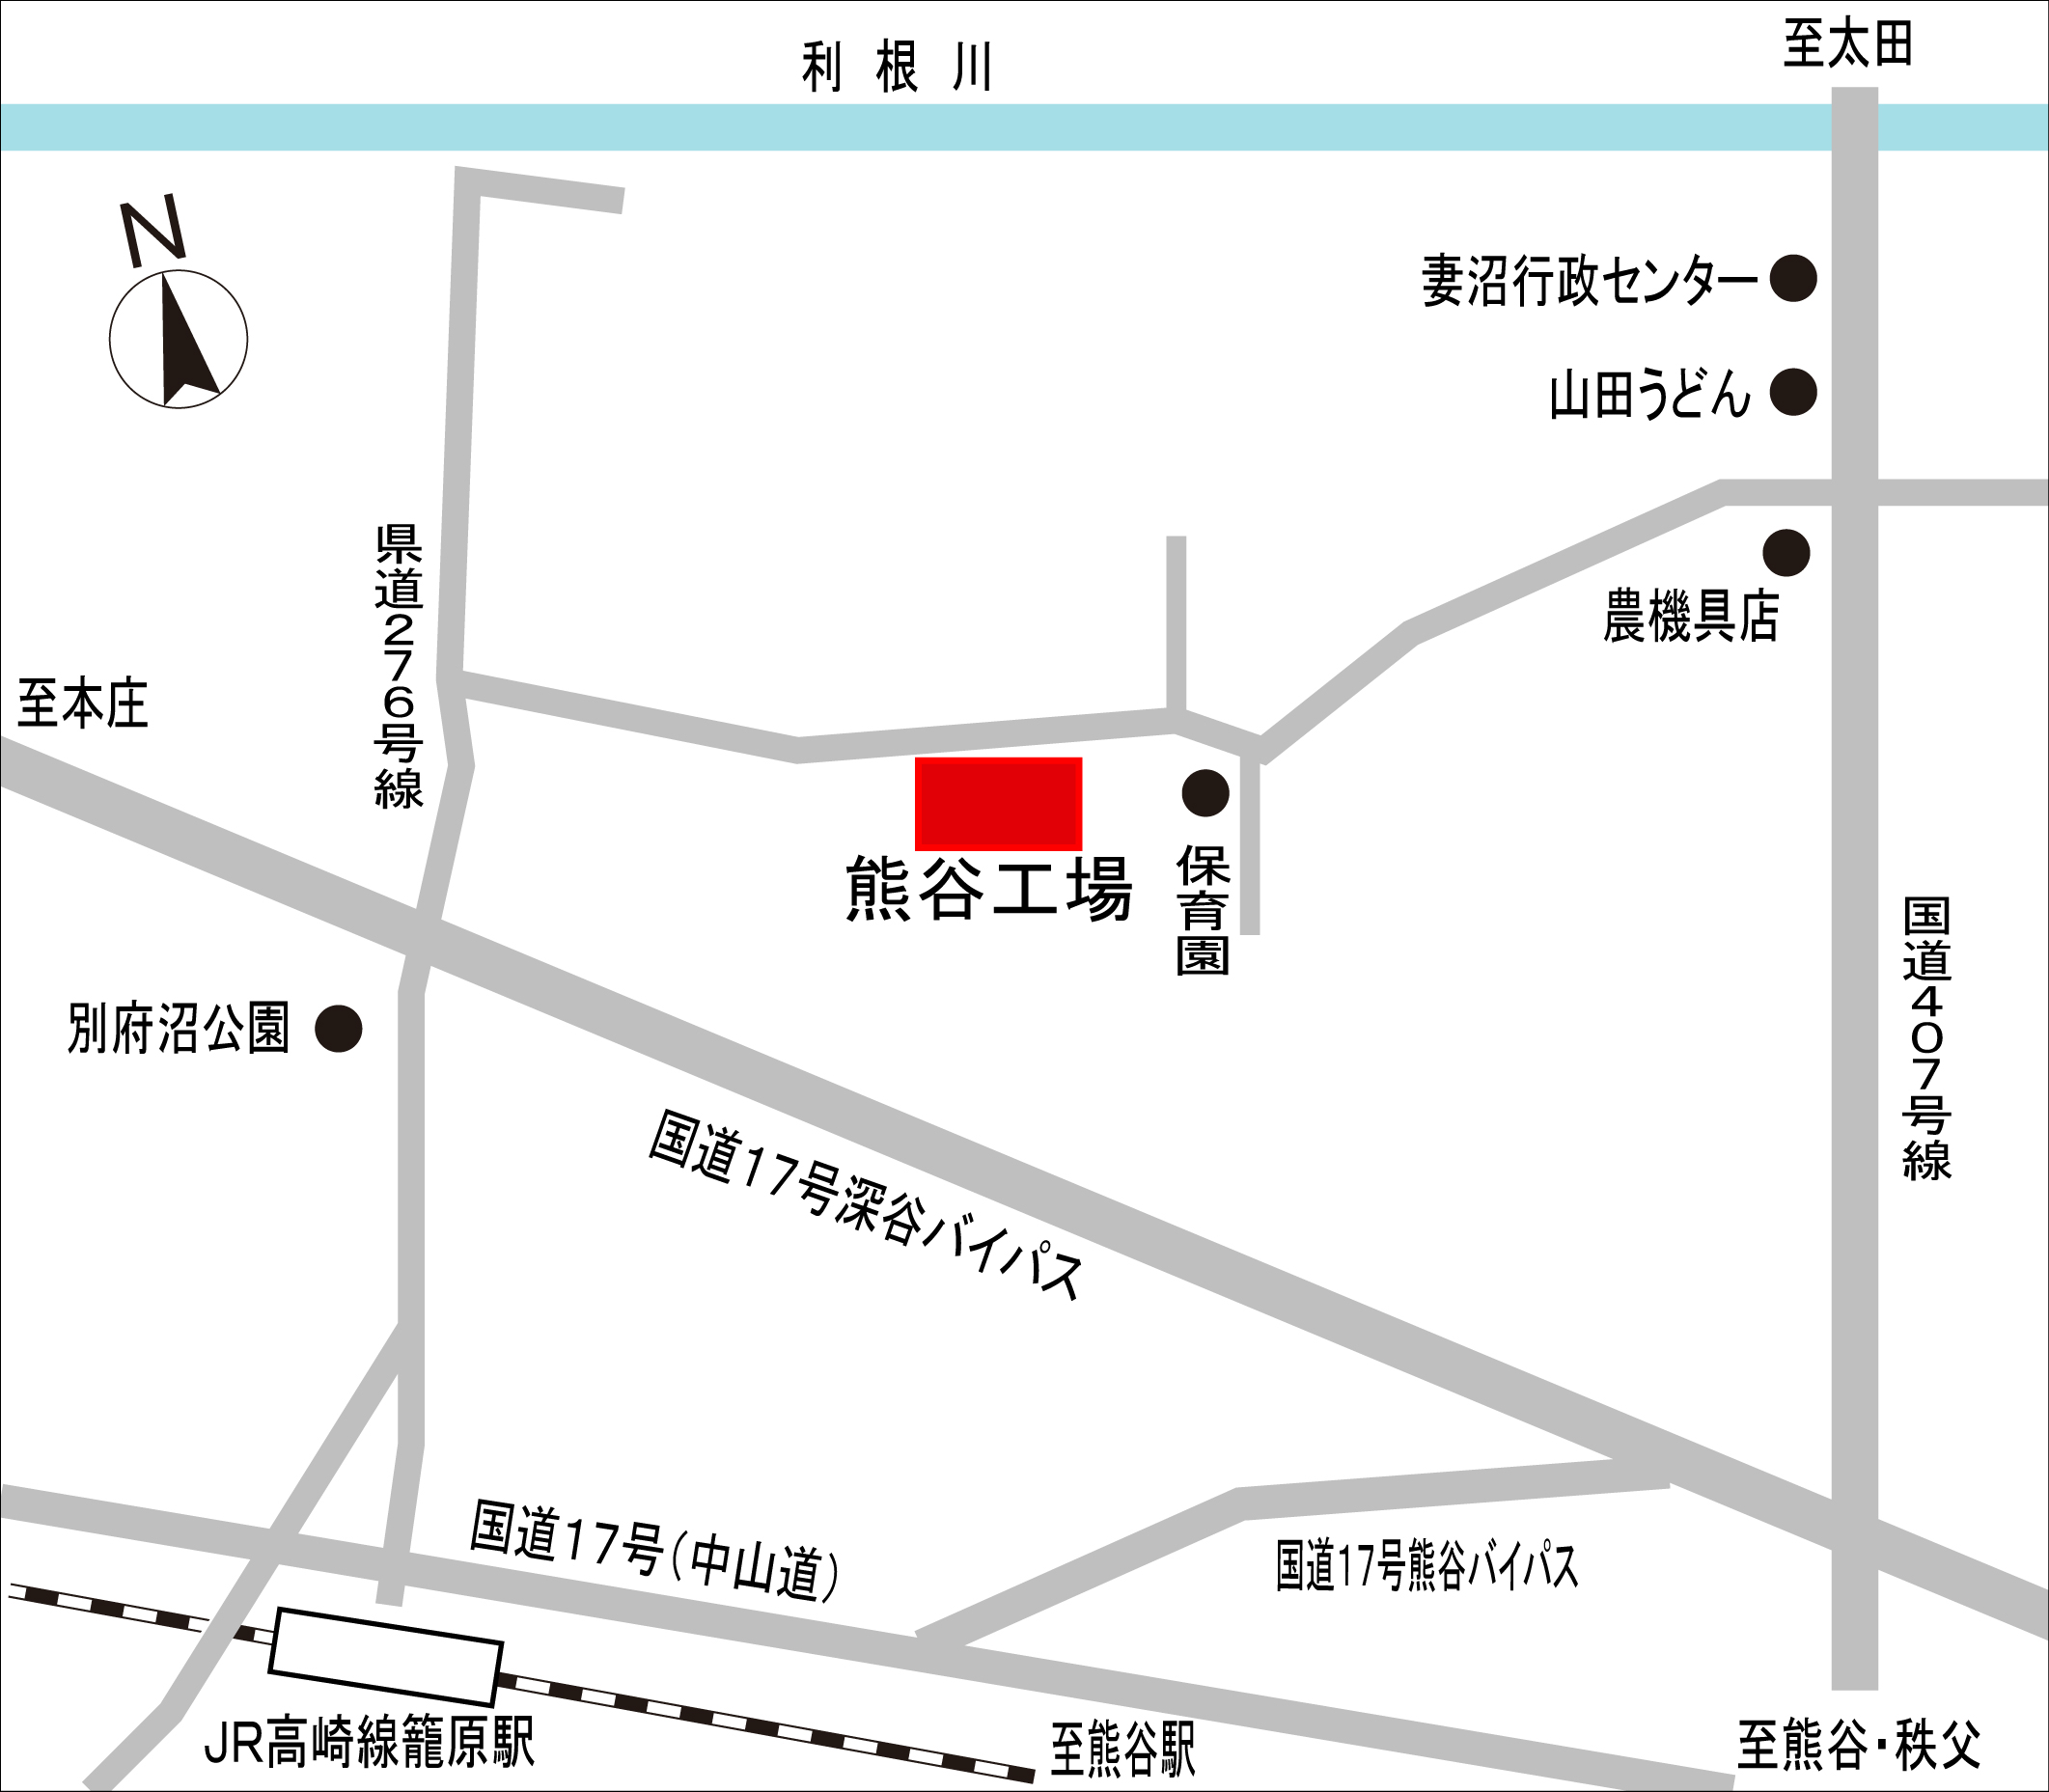 熊谷工場略地図